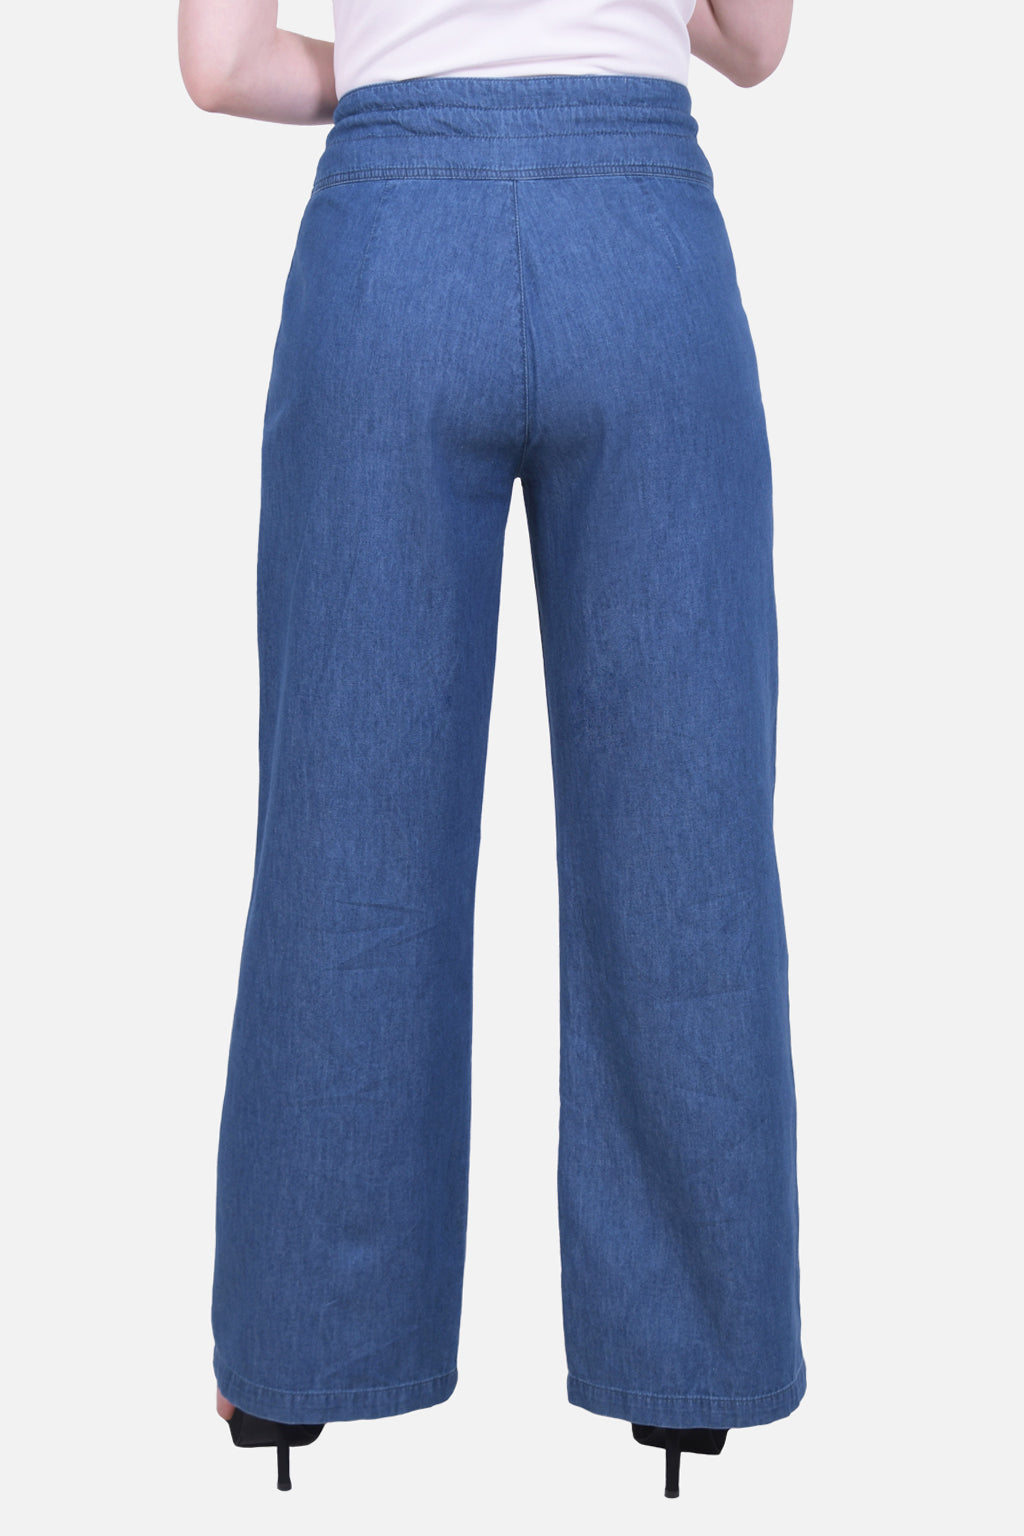 Pantalon Lobato Azul Medio